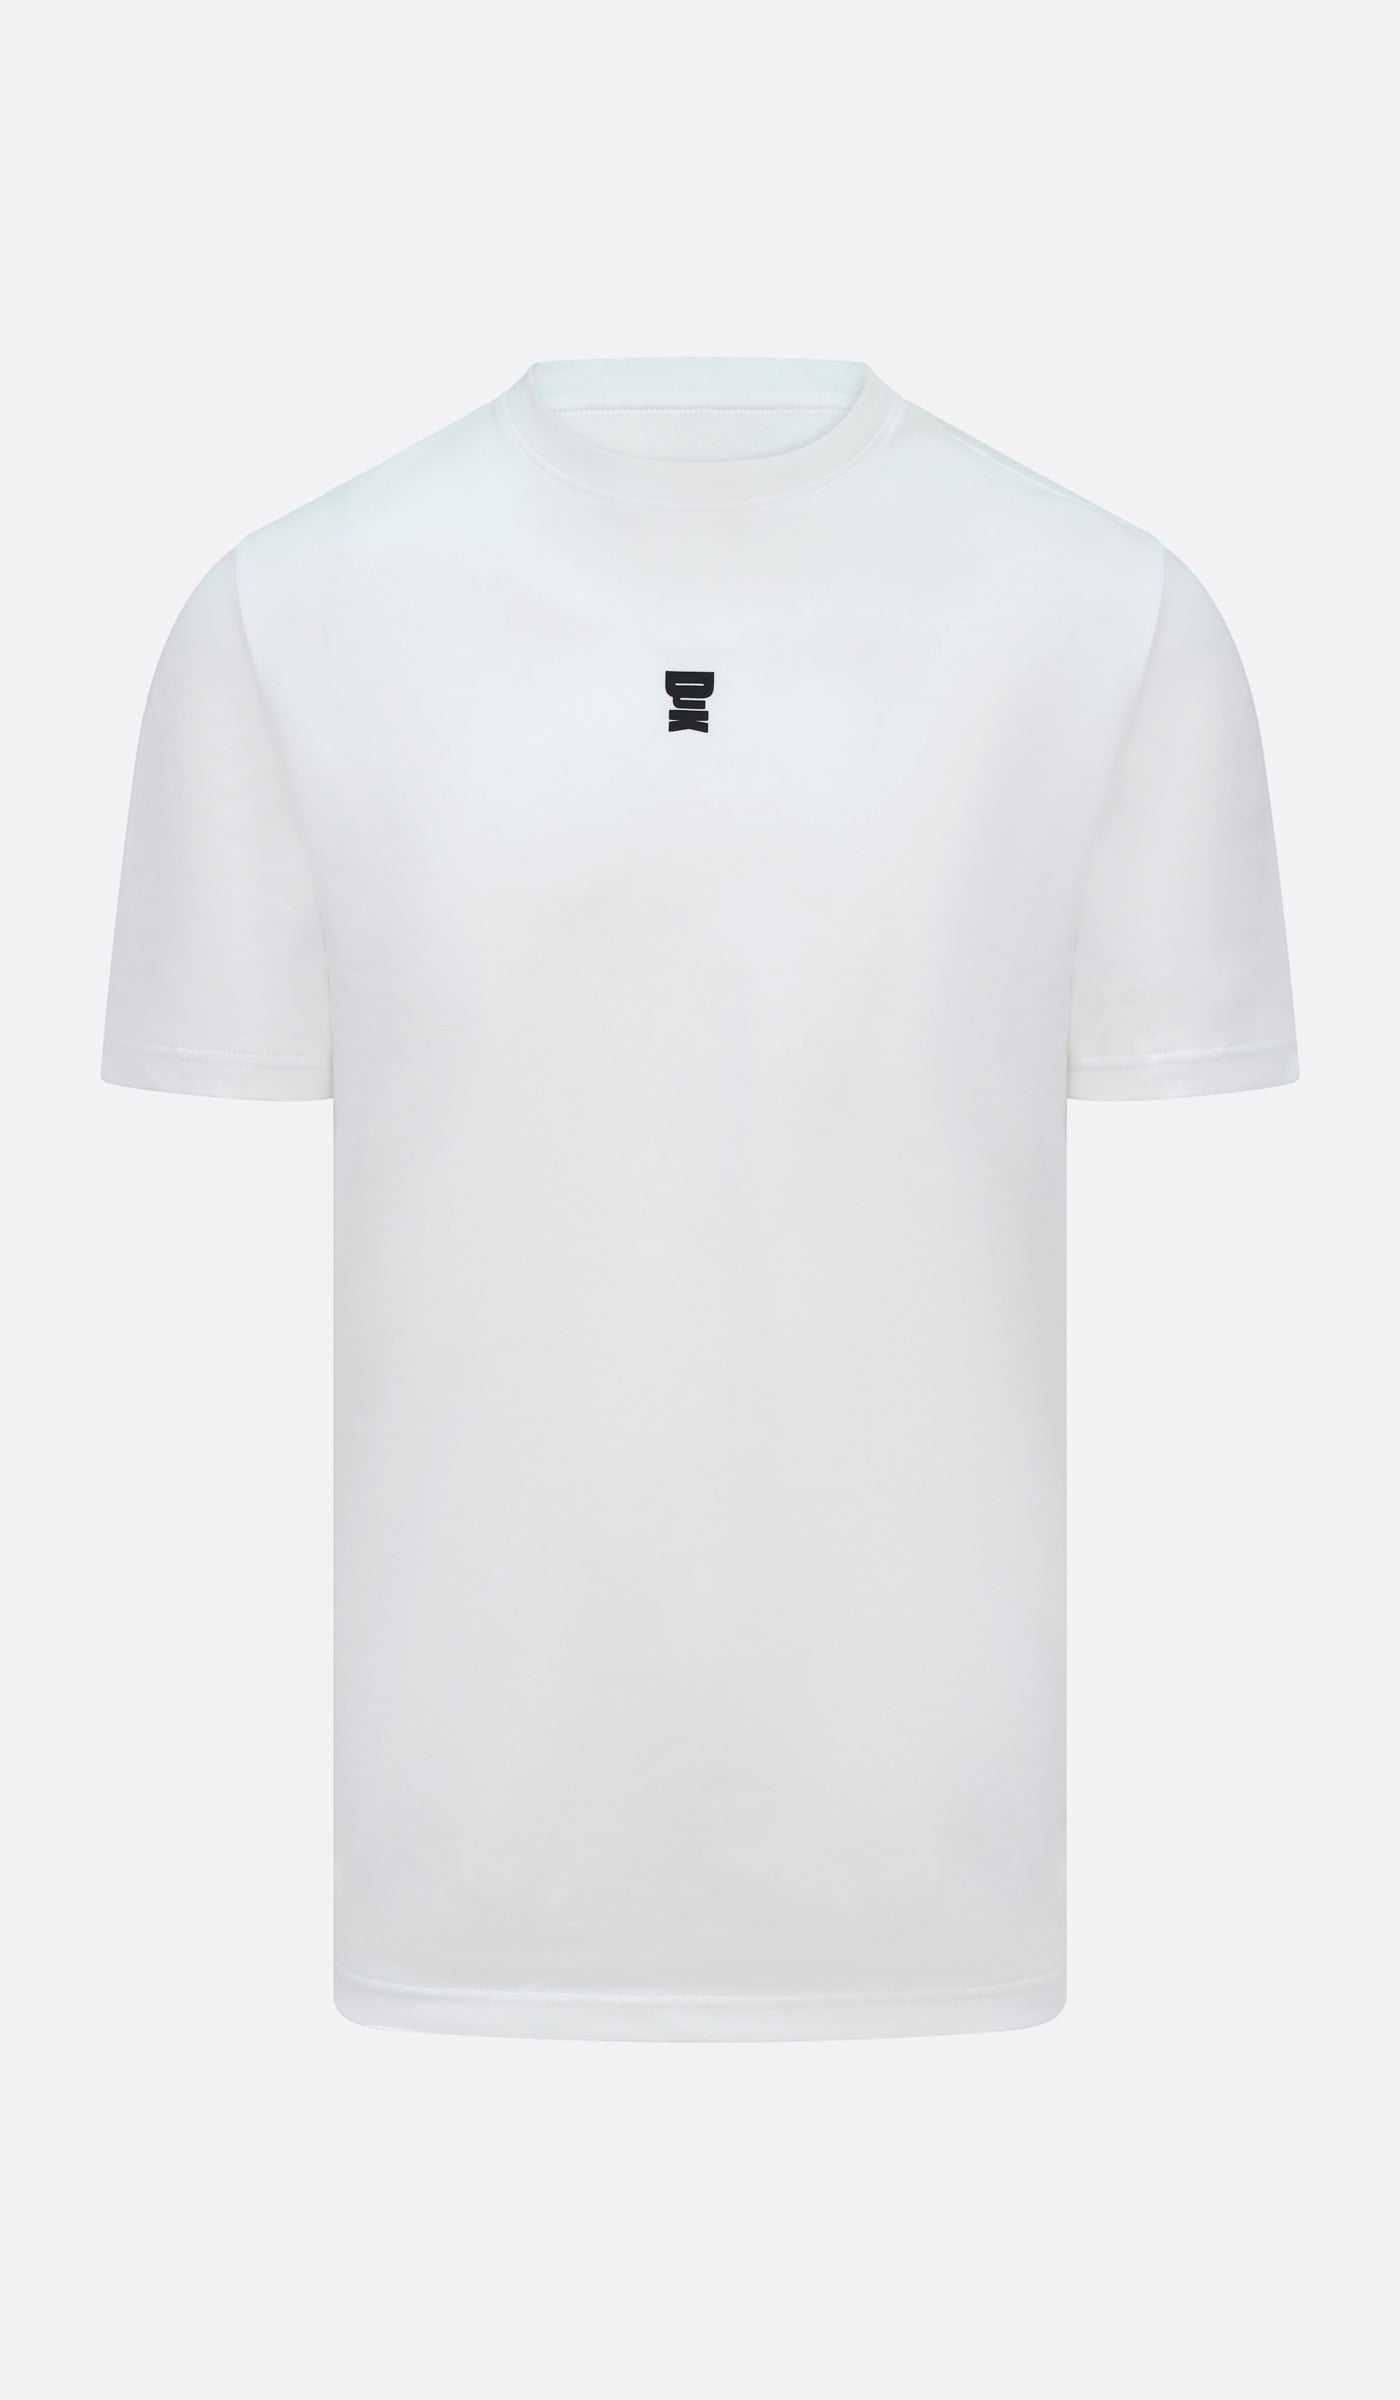 DJK Ninja Logo T-Shirt